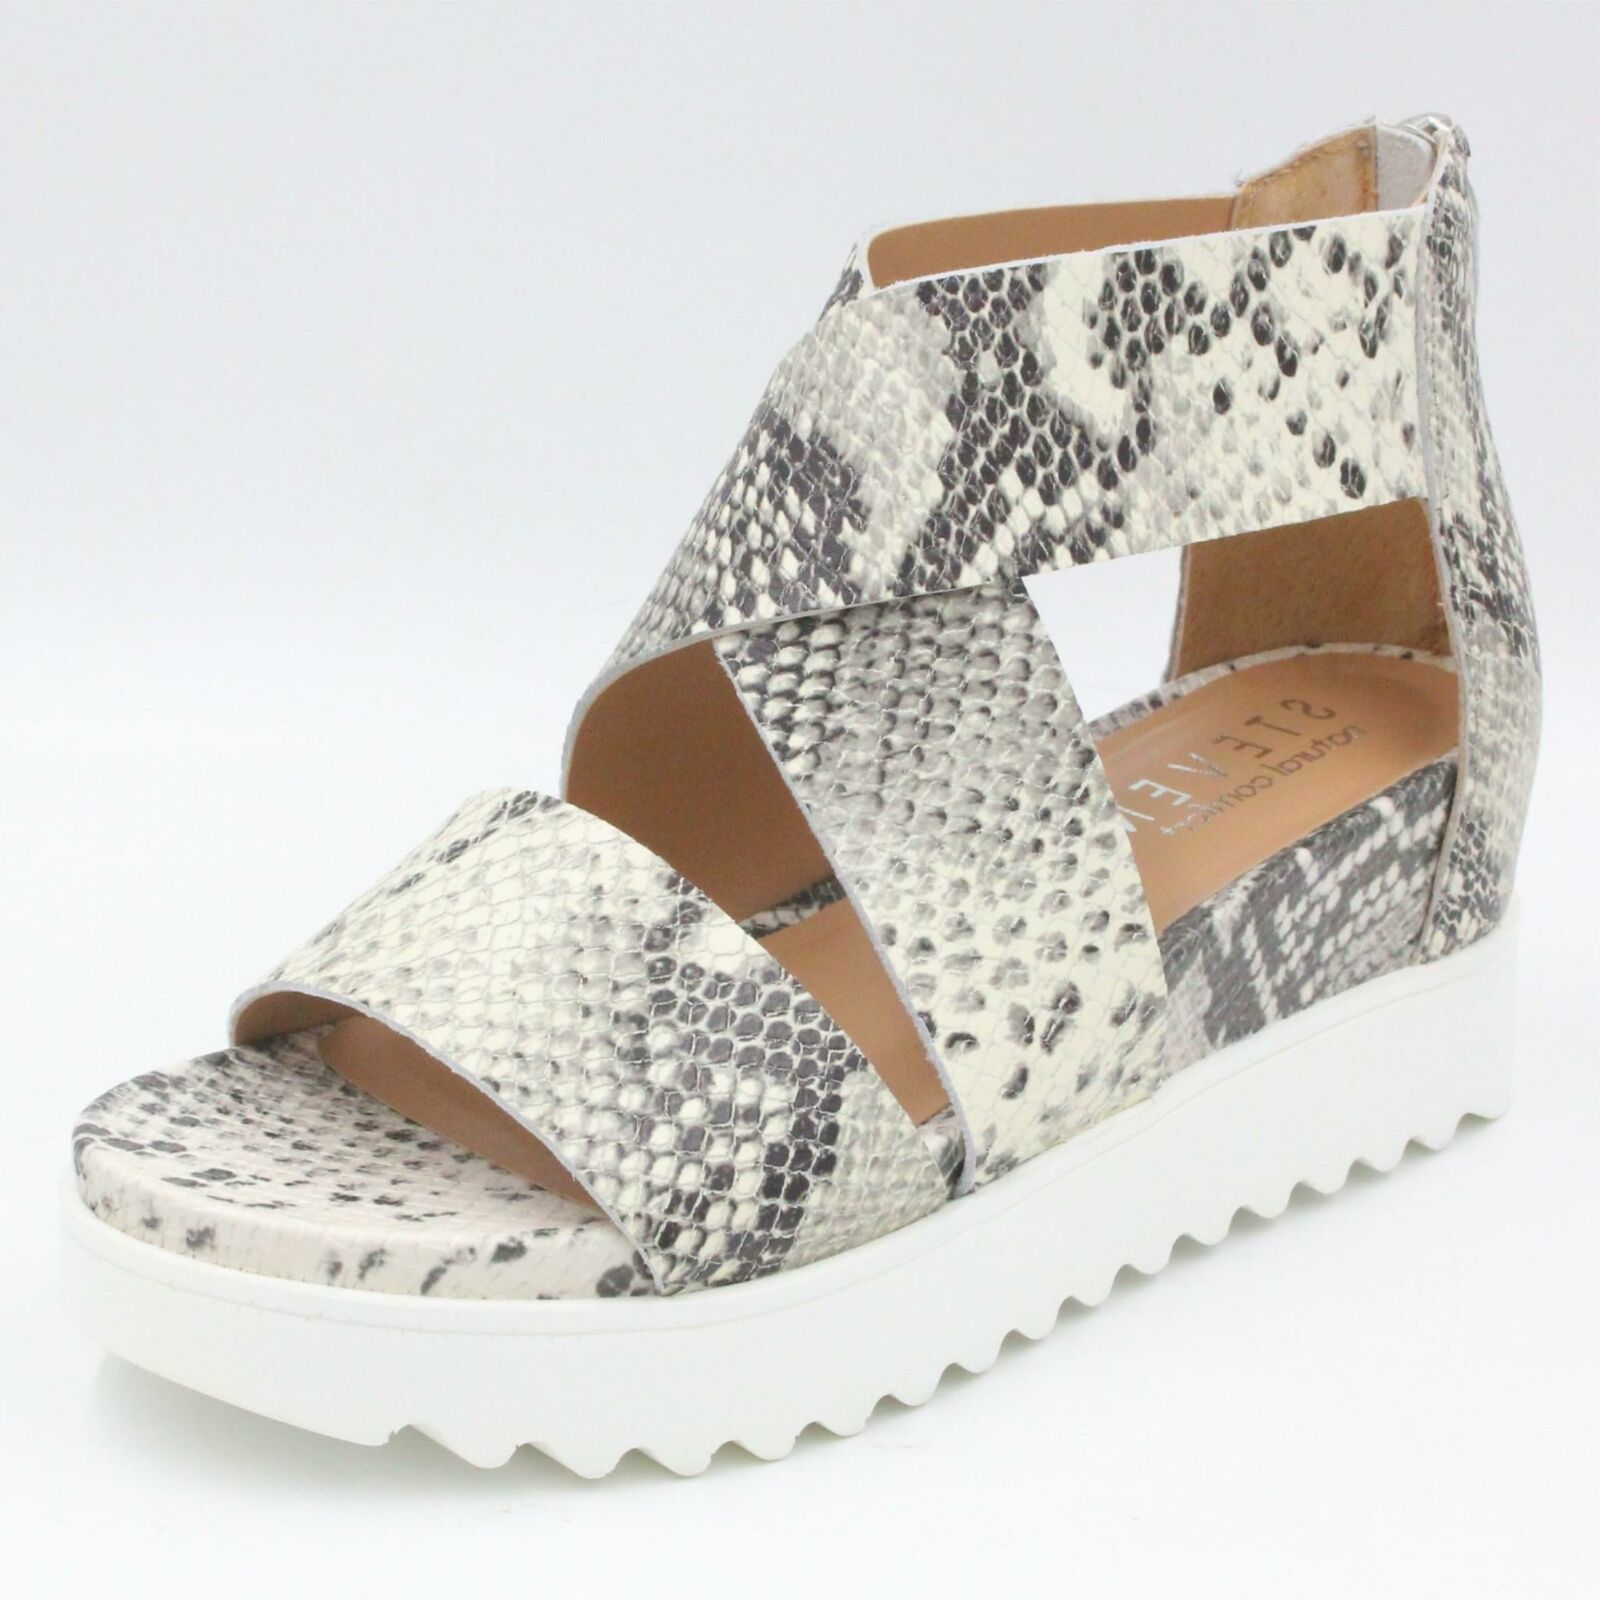 steven natural comfort kea leather platform sandal